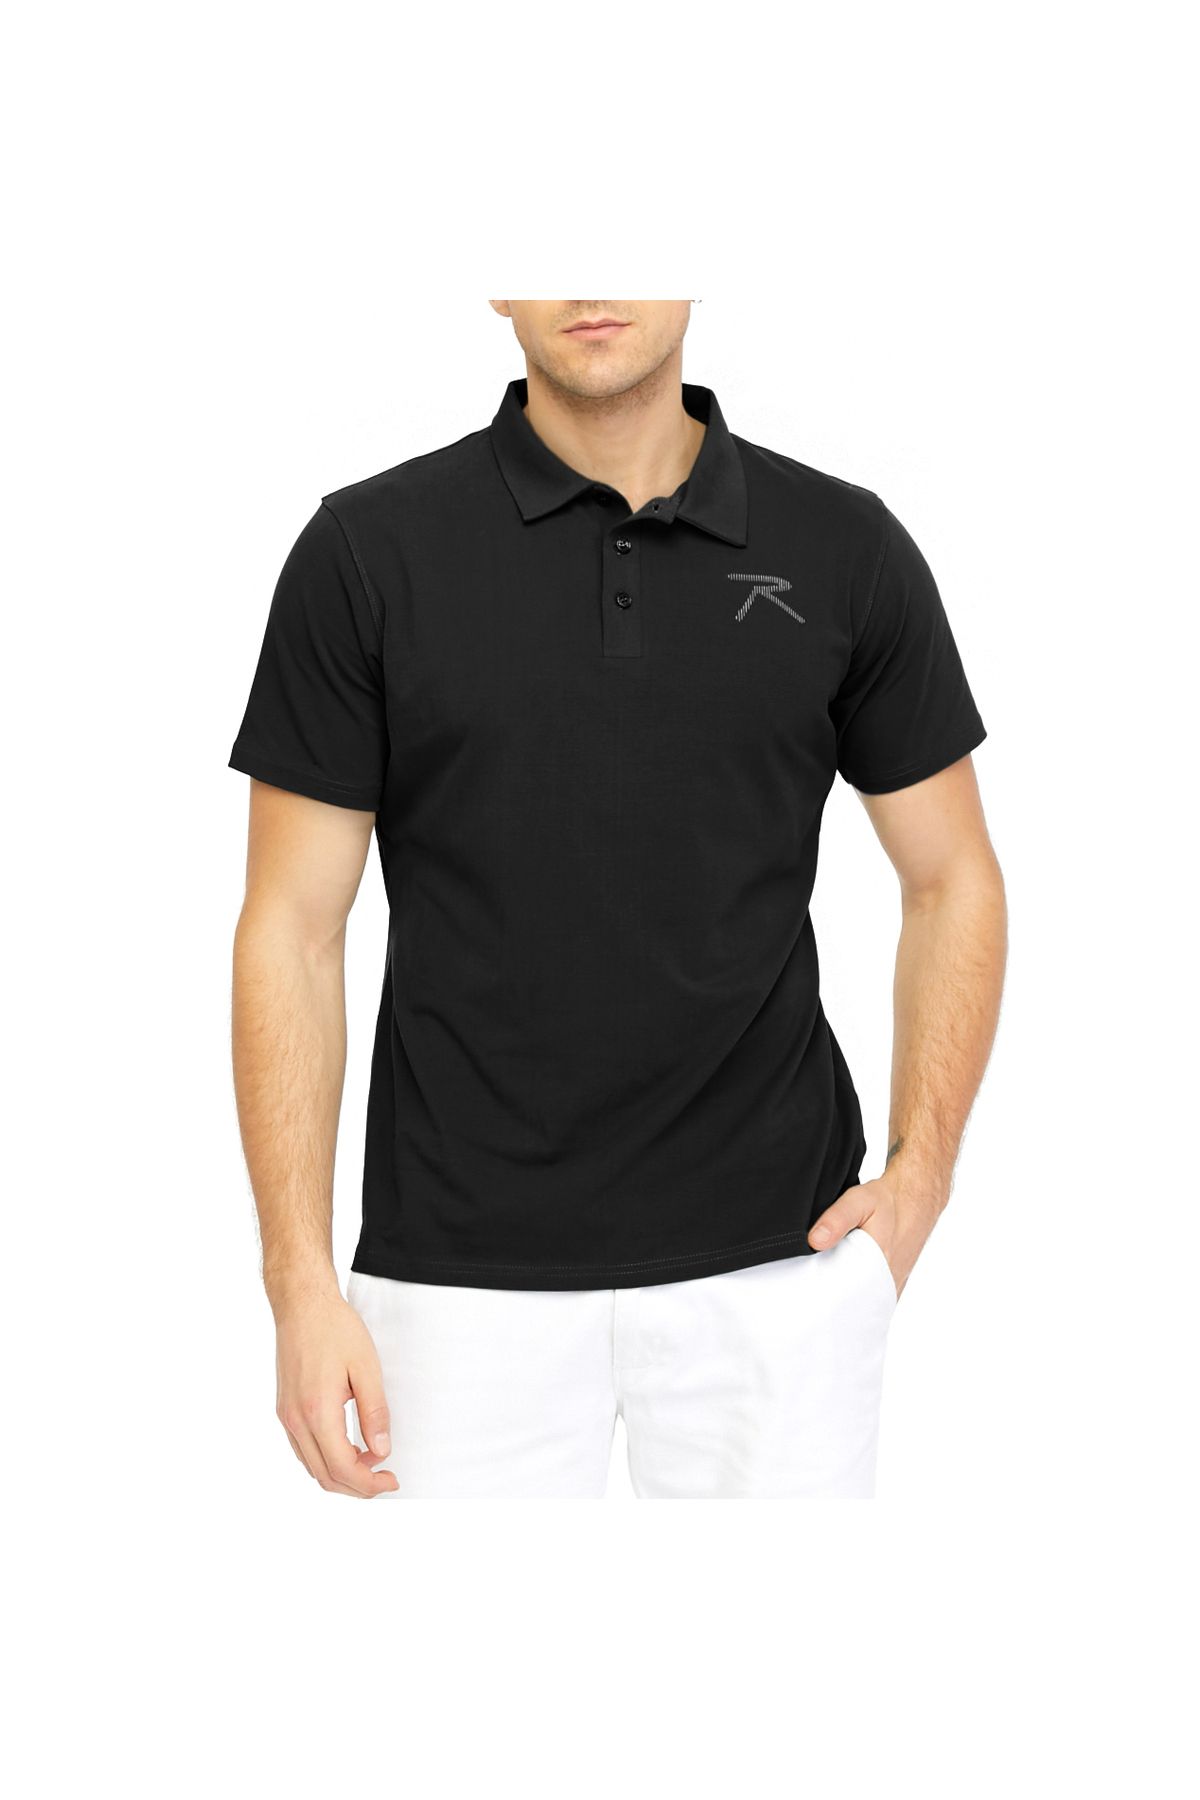 raru Erkek Kısa Kollu Polo T-shirt Ostendo Siyah